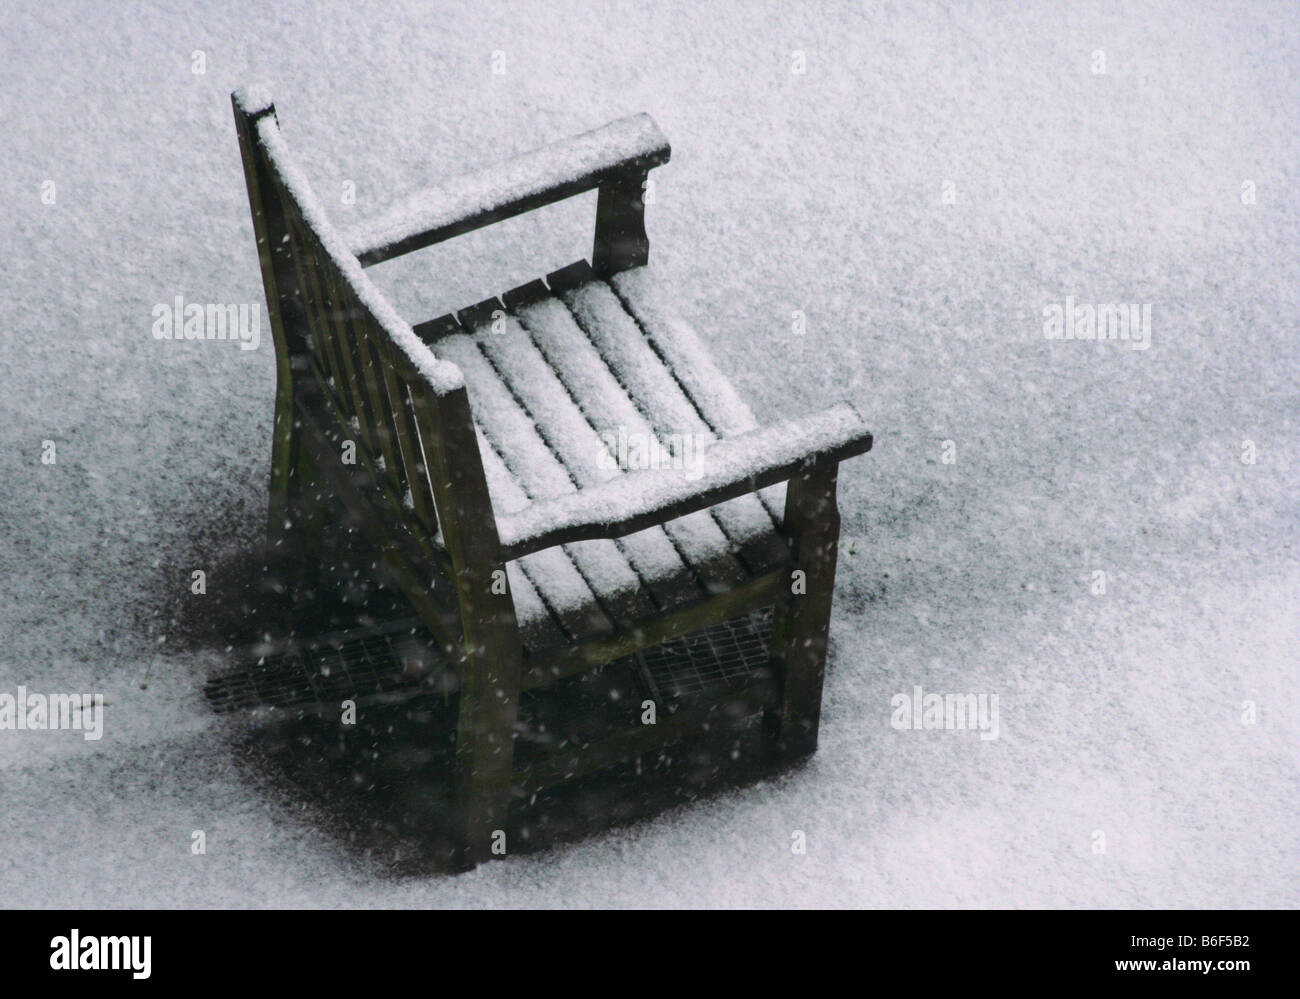 Fauteuil de jardin en bois dans la neige, Allemagne Banque D'Images